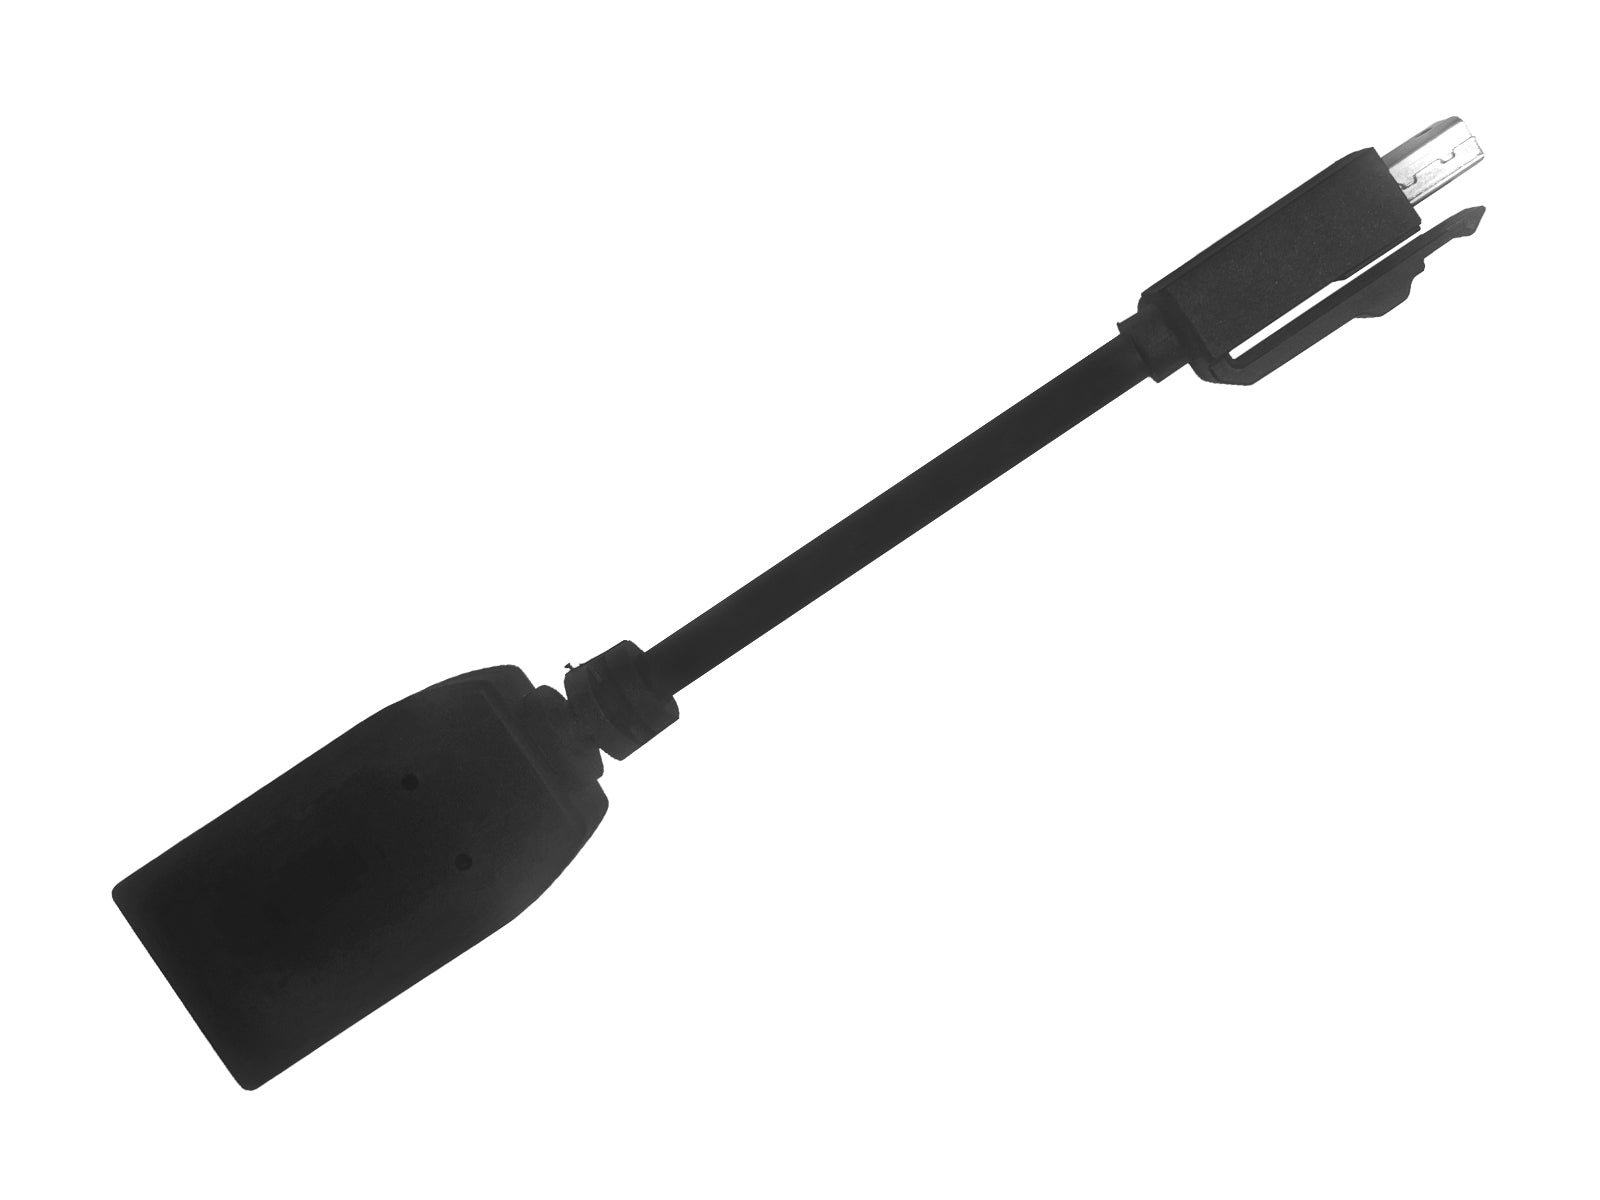 Convertisseur d'adaptateur de signal vidéo HP Mini DisplayPort vers DisplayPort (703216-001) Monitors.com